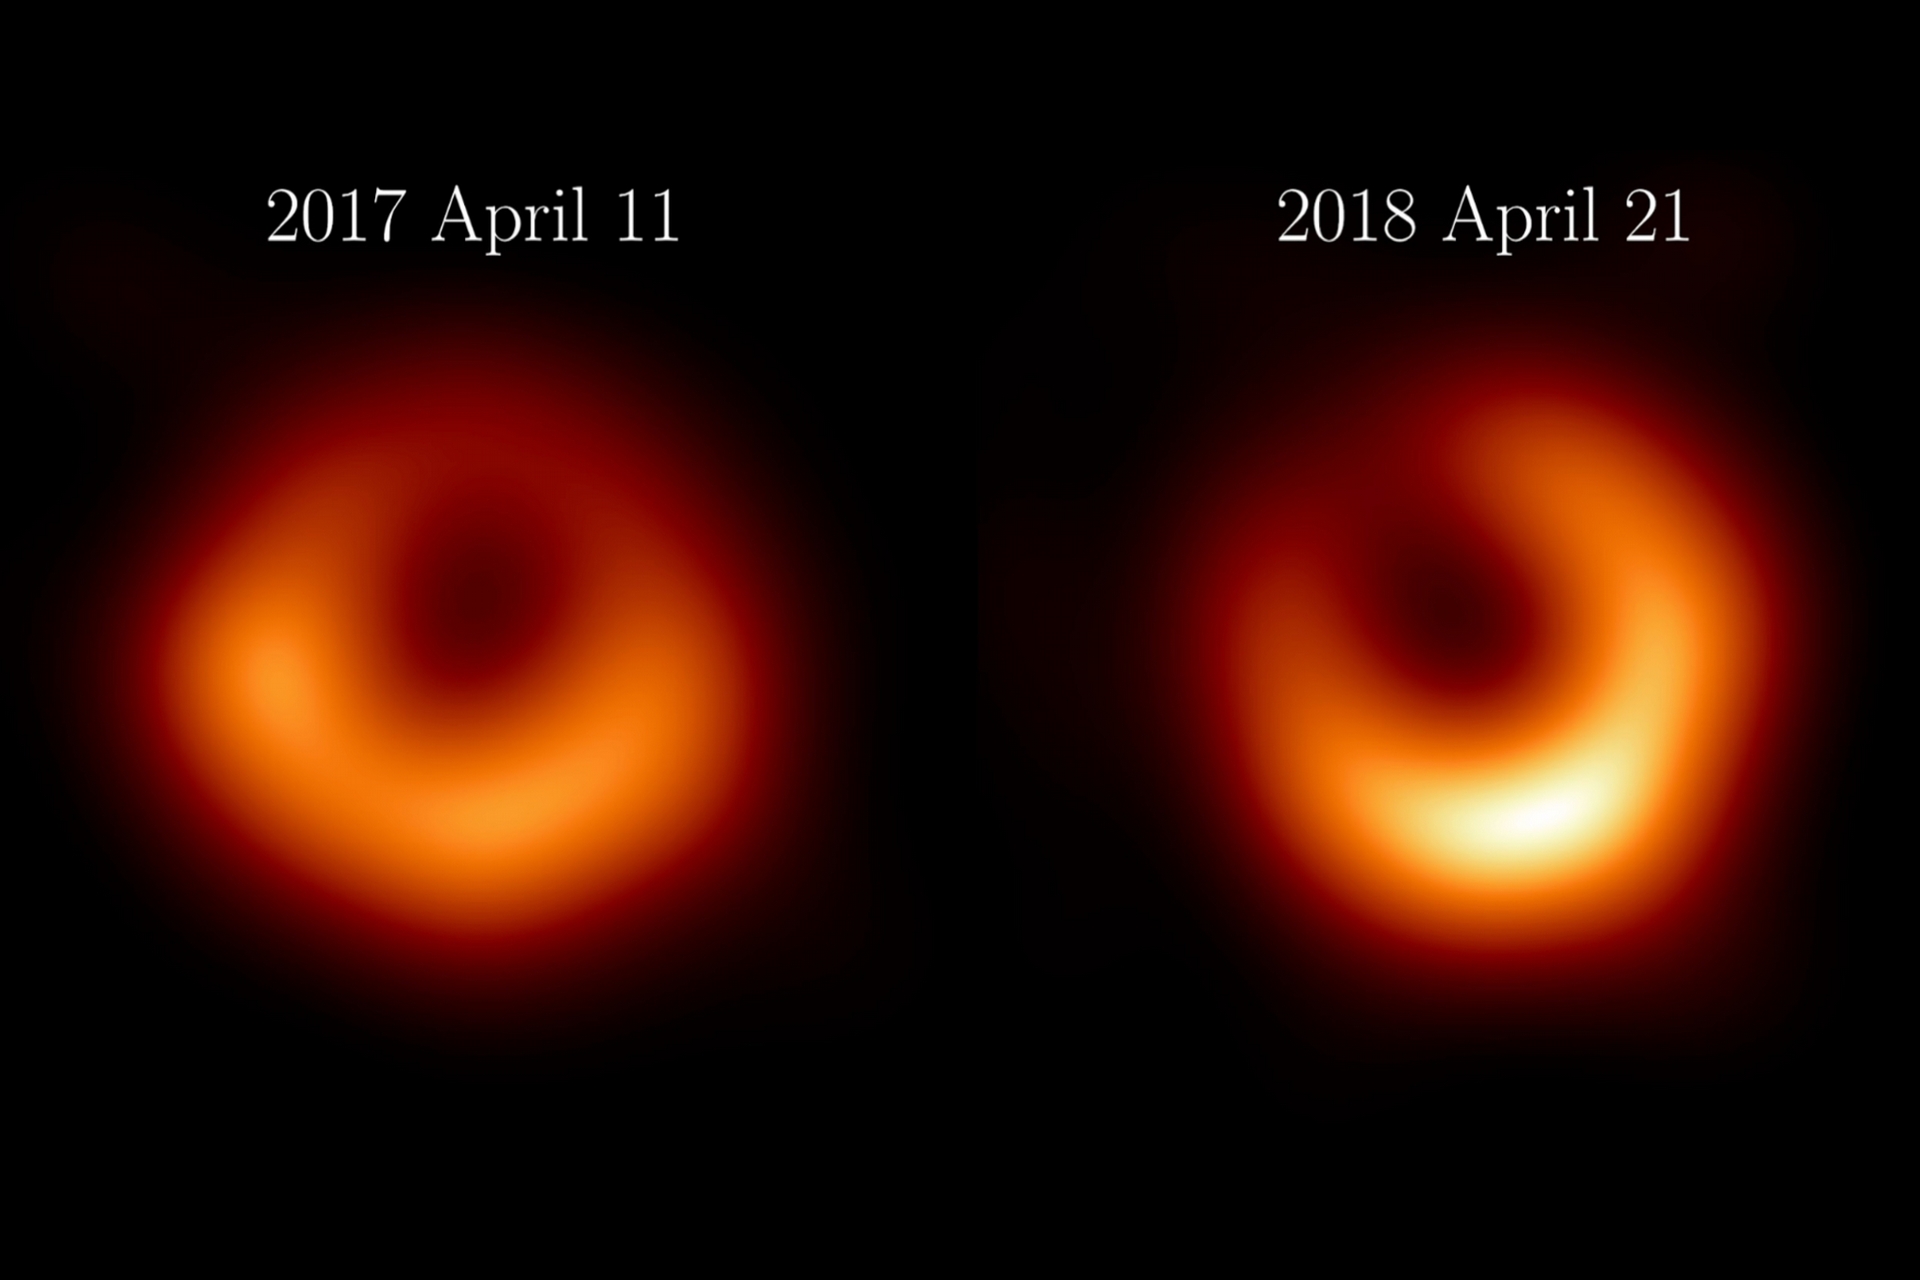 事件視界望遠鏡2024年1月18日釋出了M87黑洞的最新影像（右圖），影像是根據2018年4月的觀測數據製作的，距離2017年4月的首次觀測（左圖）相距一年。在這兩幅影像中，黑洞暗影持續存在，而黑洞周遭的樣貌亦隨時間有所變化，都符合廣義相對論的理論預測。